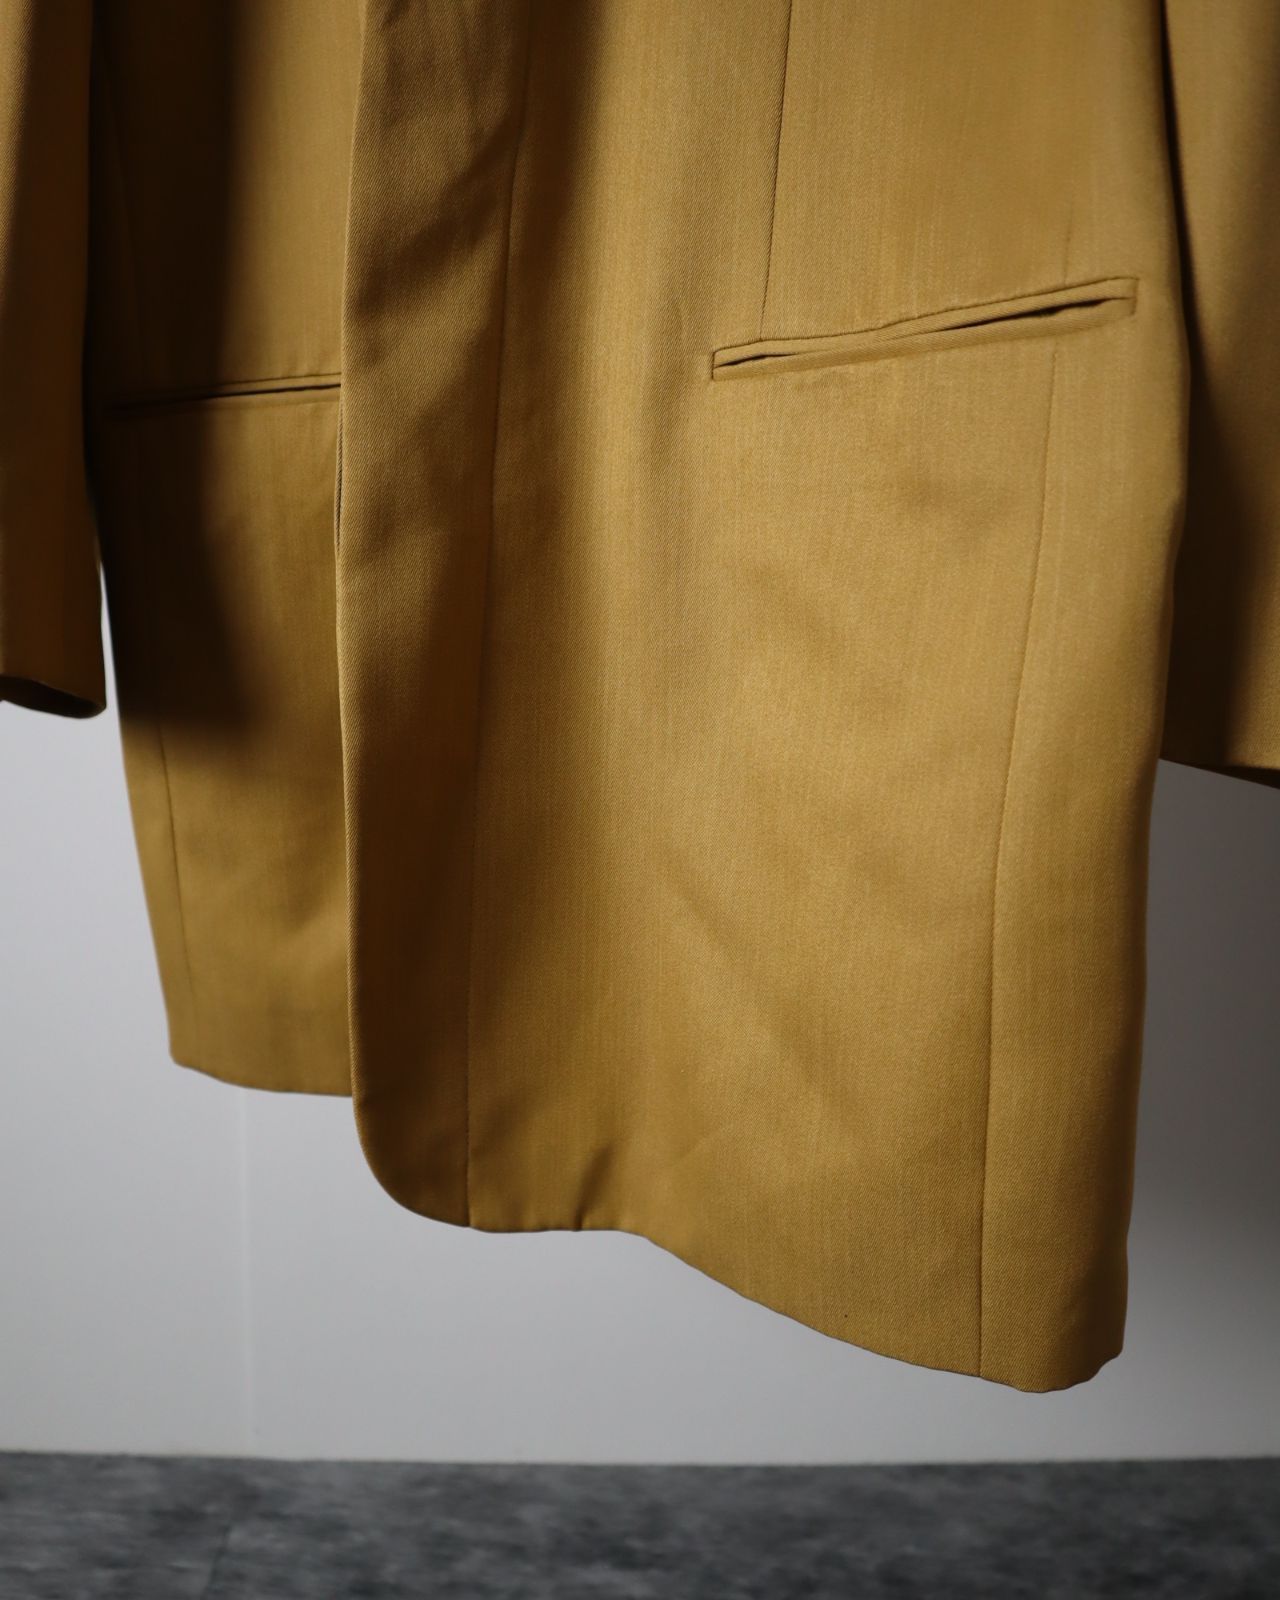 vintage】ロング シングルブレストテーラードジャケット コート